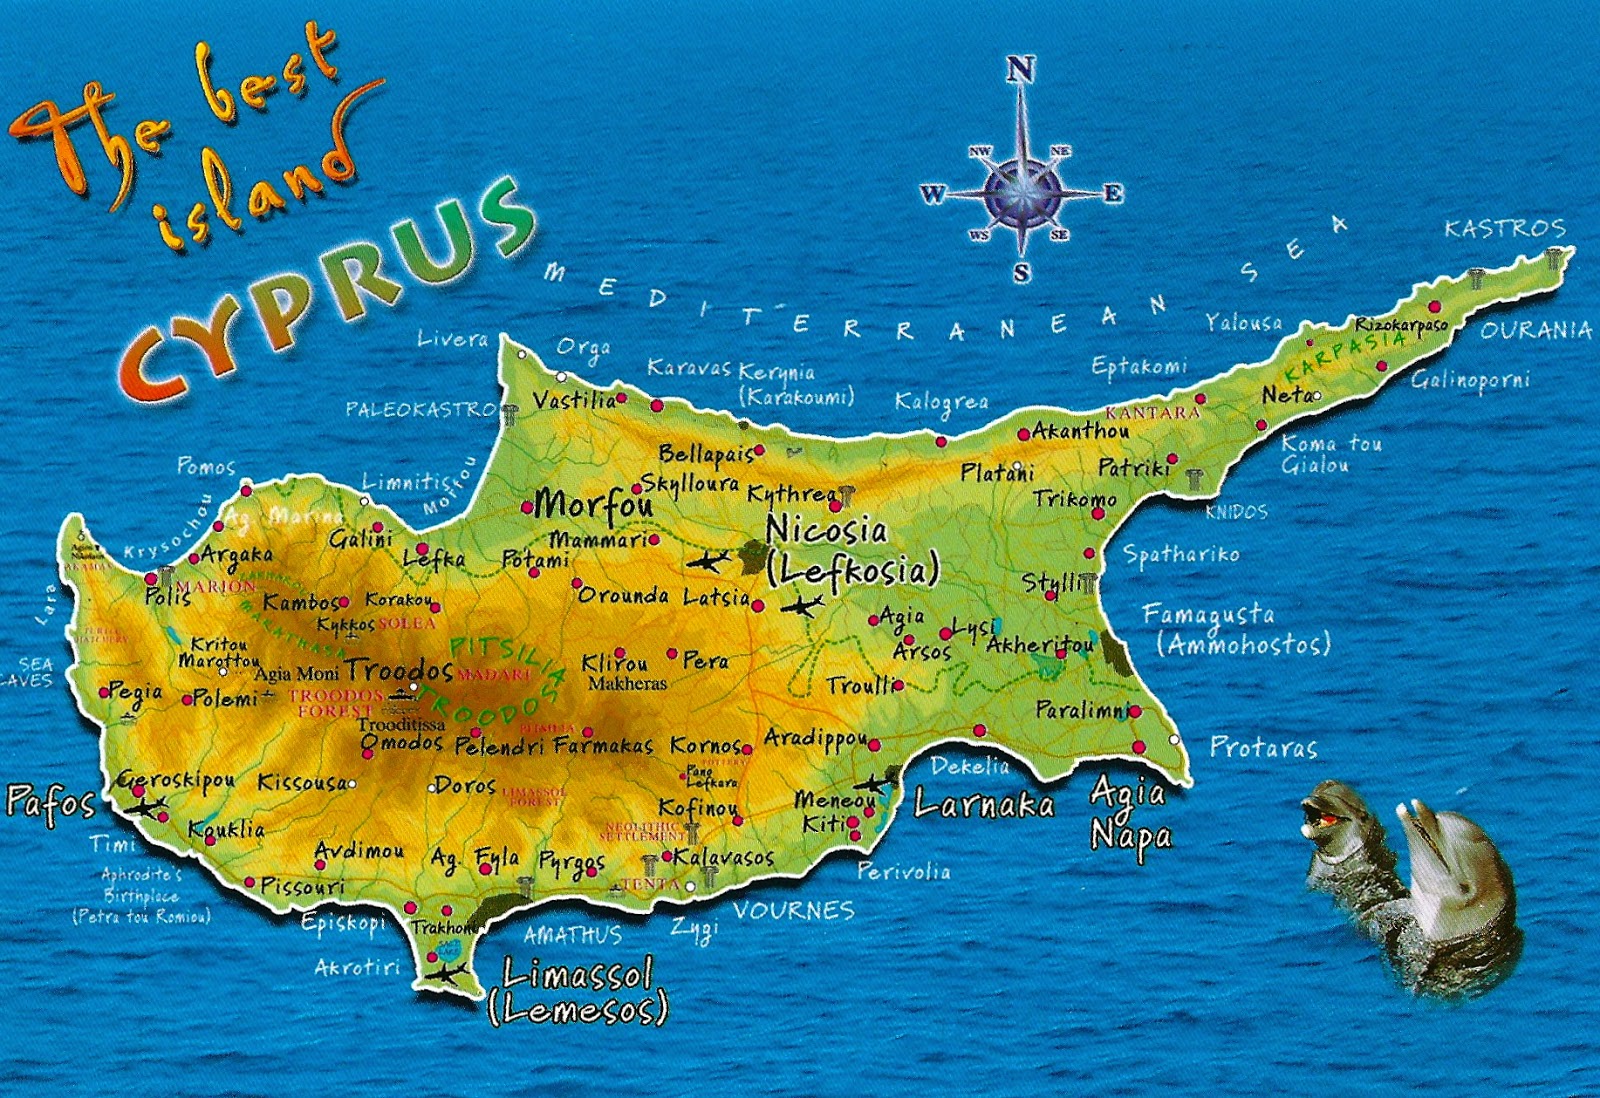 Кипр какая страна. Географическая карта Кипра. Кипр остров географическая карта. Остров Кипр на карте. Кипр карта Ларнака острова.